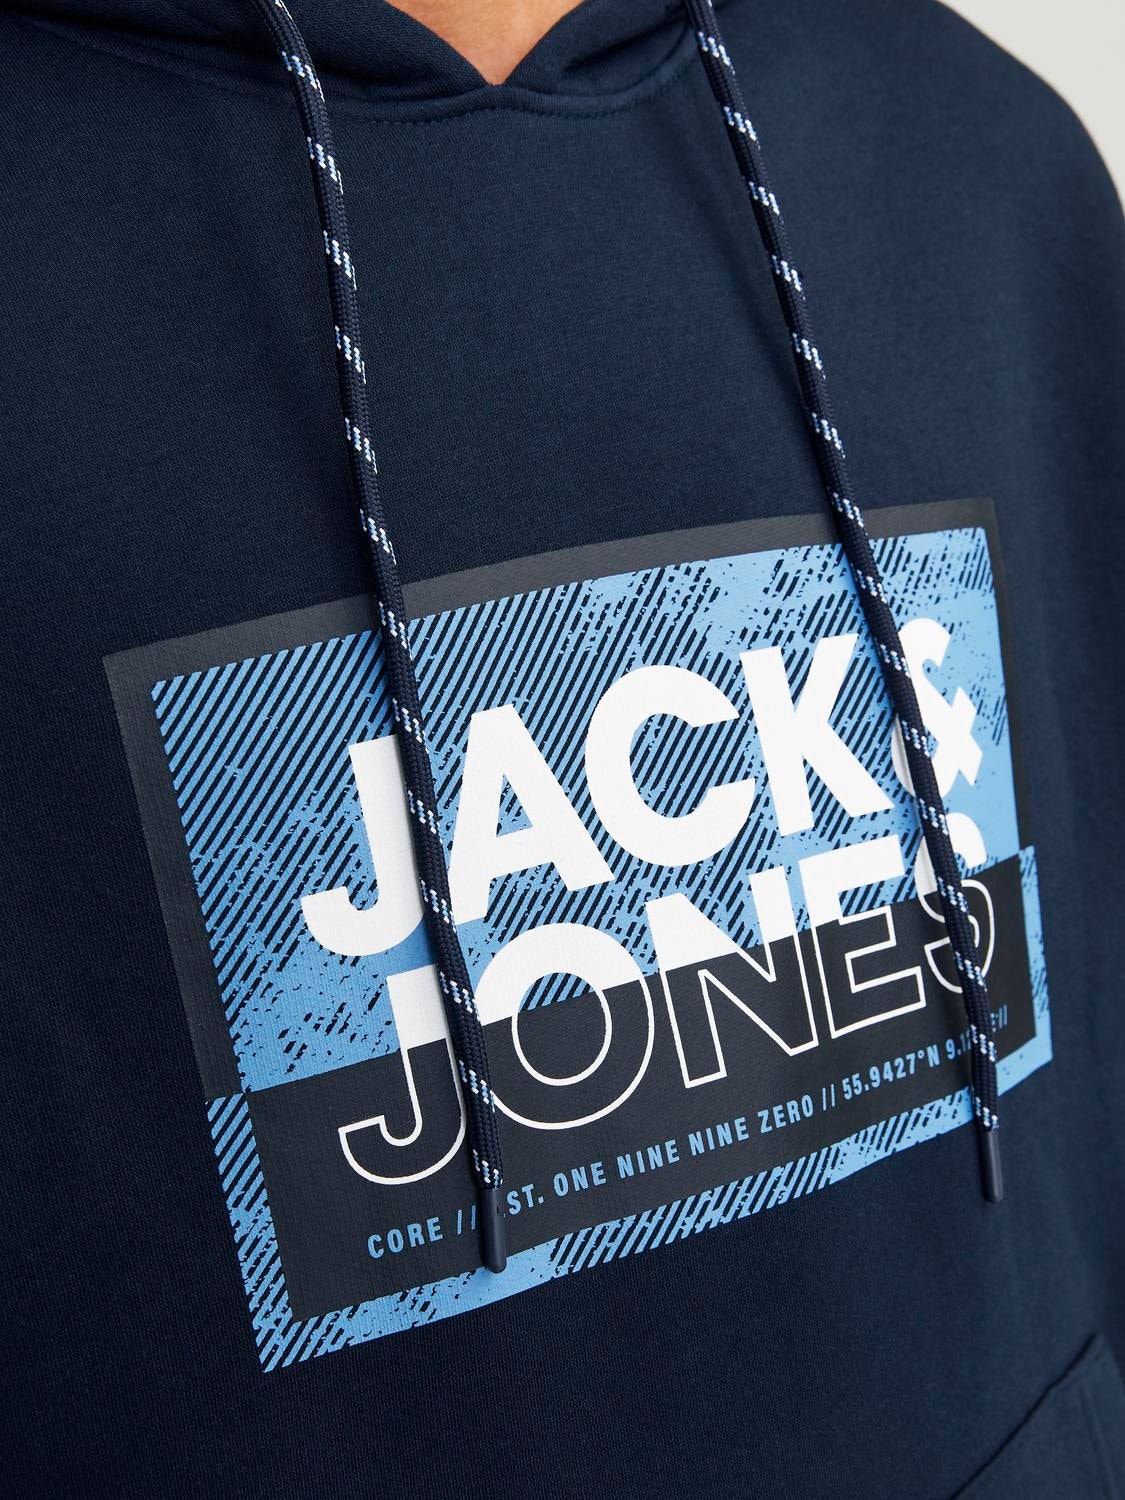 Jack & Jones Sudadera con capucha Logotipo -Navy Blazer - 12253443